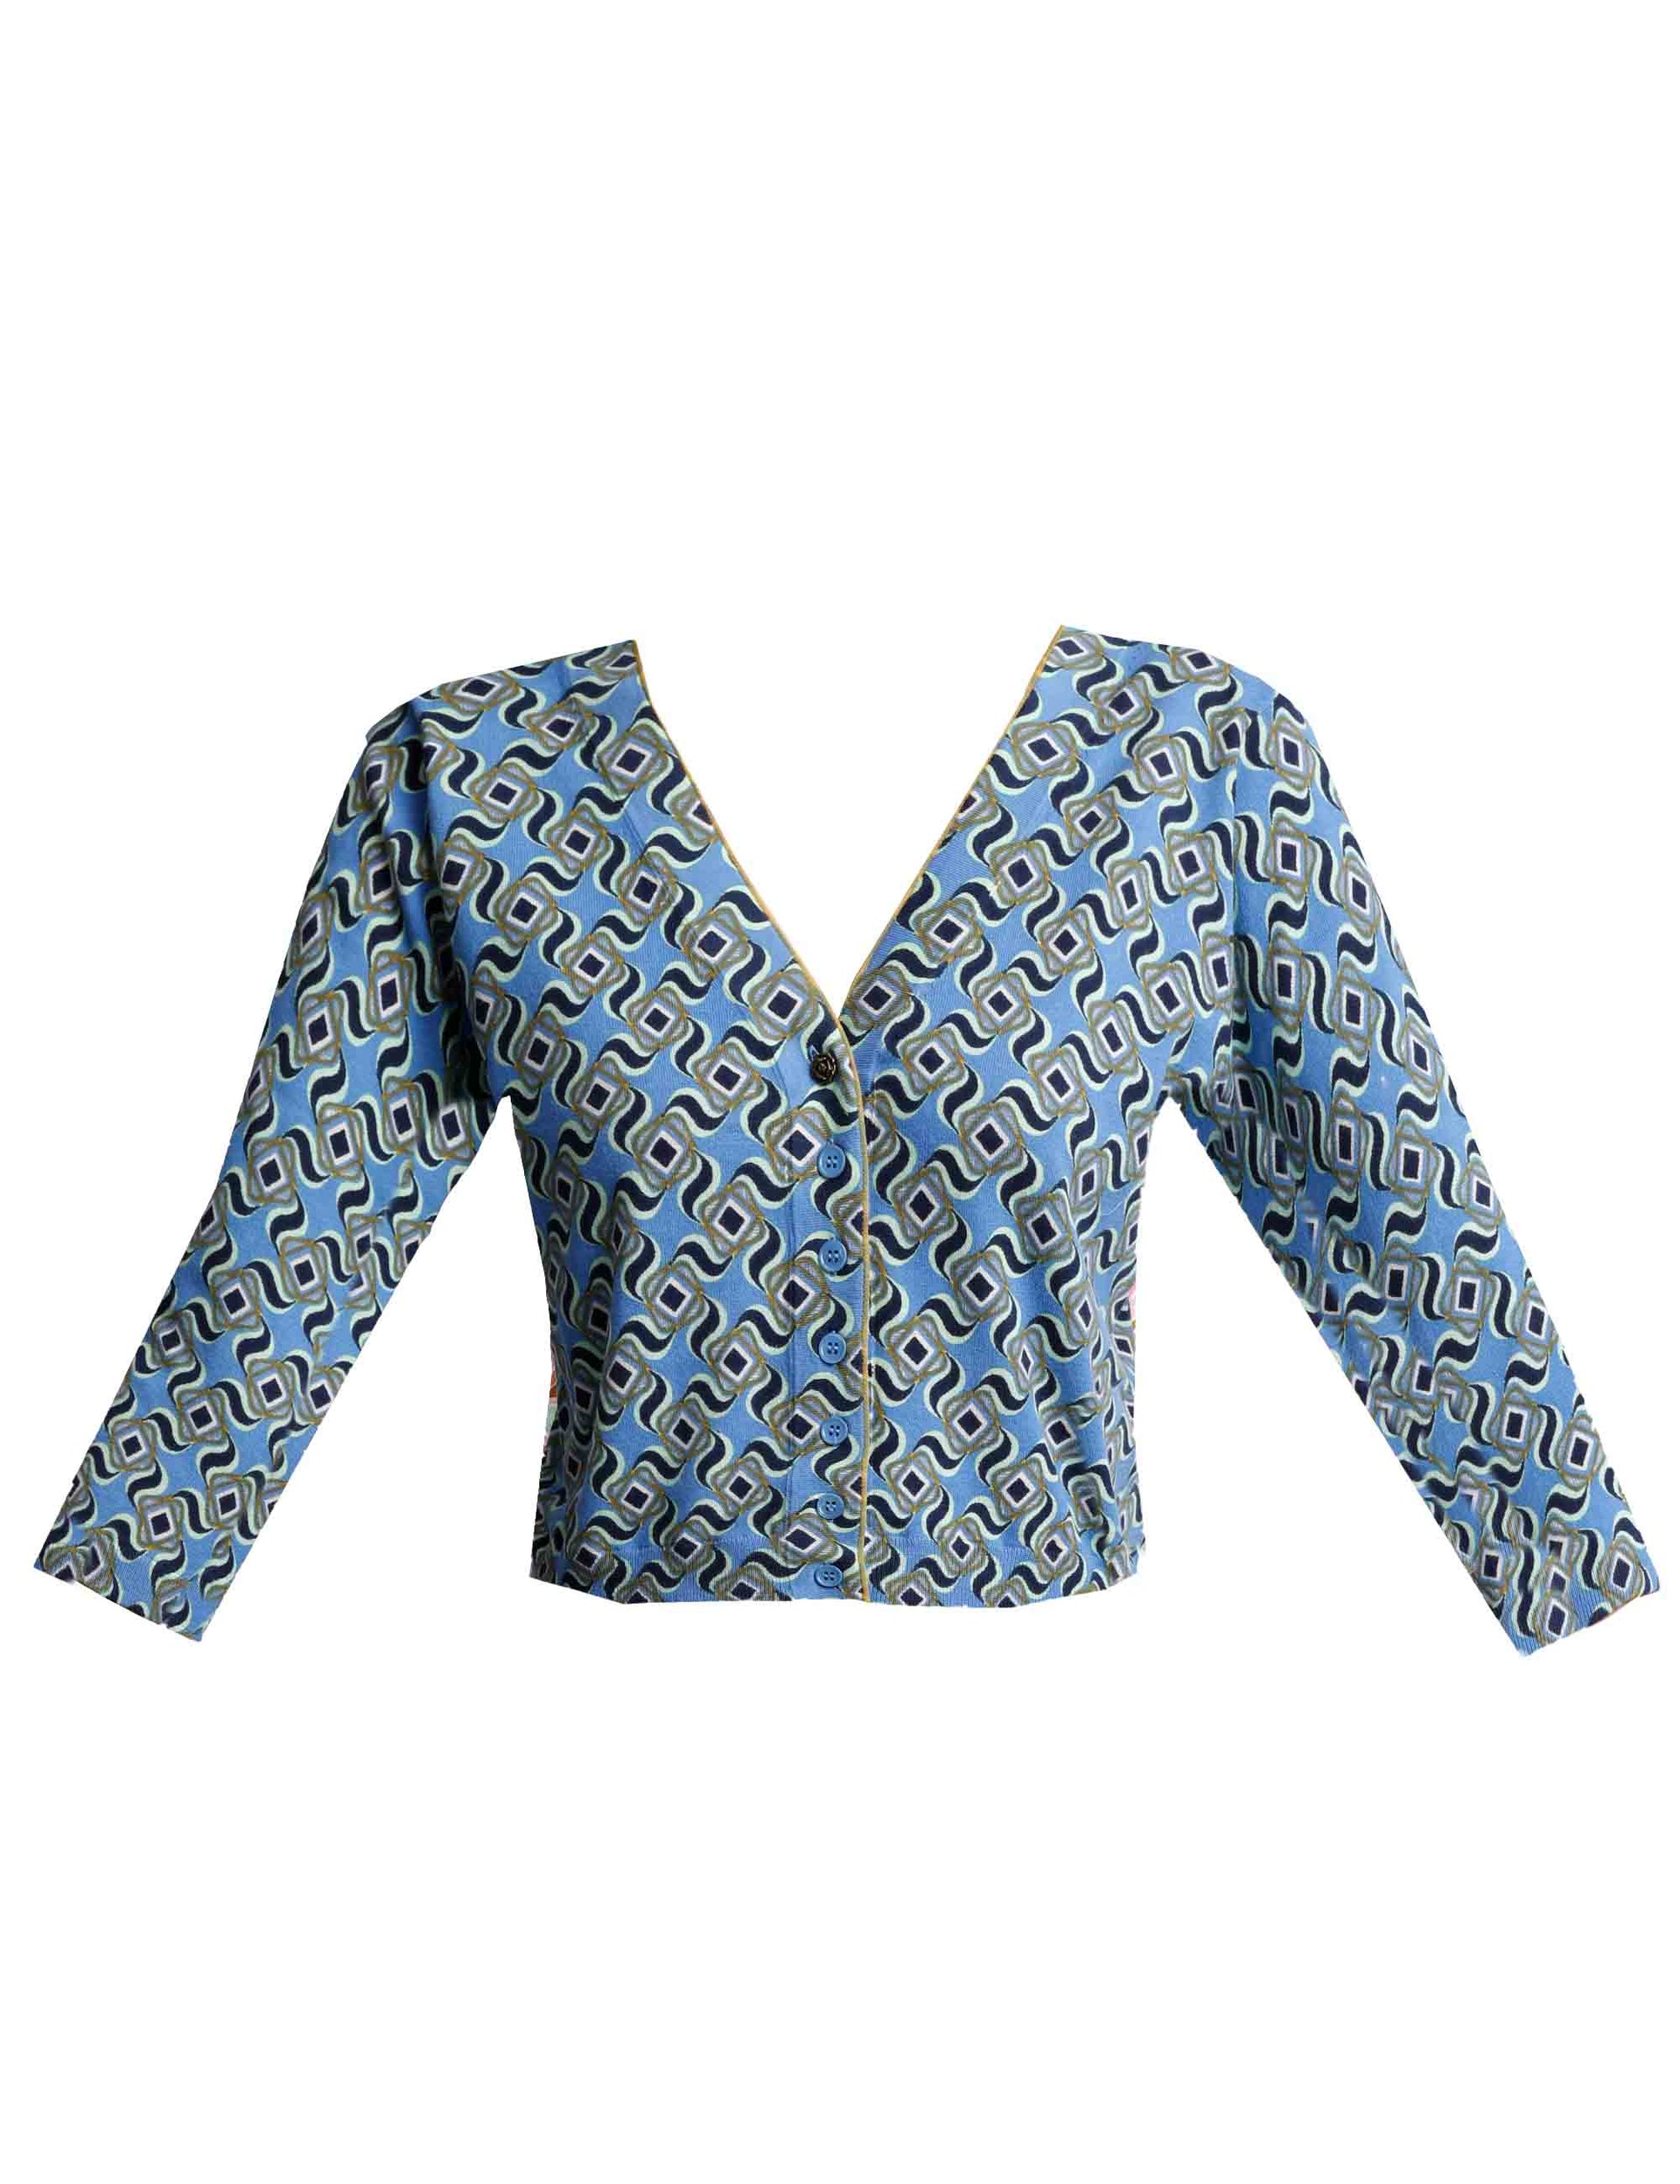 Maglie cardigan donna Printed in cotone blu con maniche 3/4